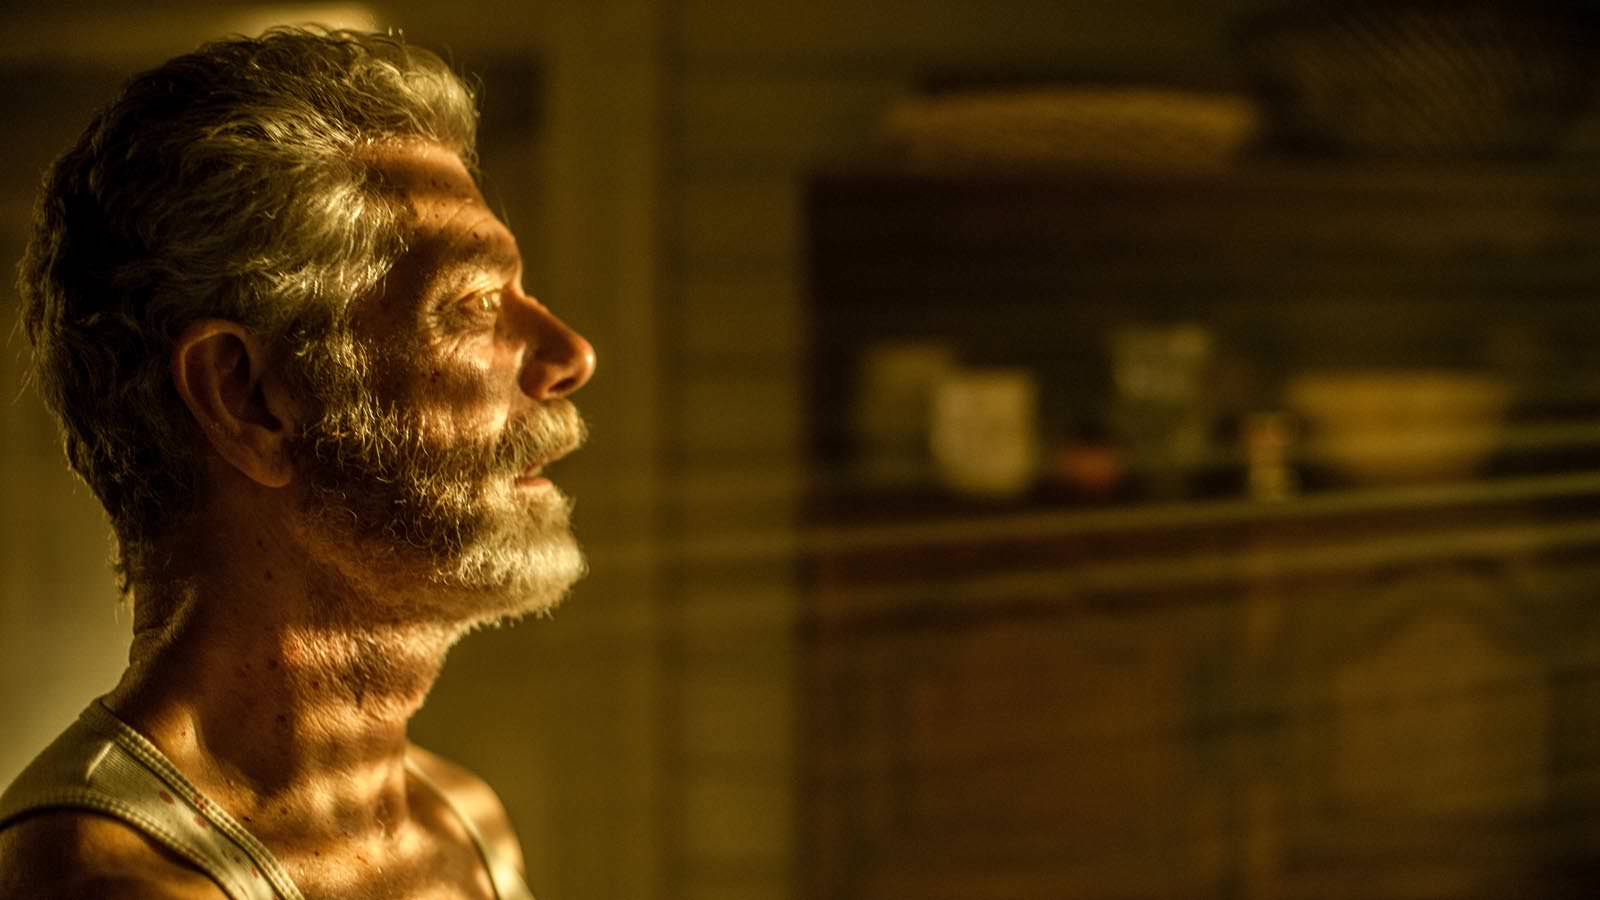 Stephen Lang stars in Screen Gems' horror-thriller DON'T BREATHE.